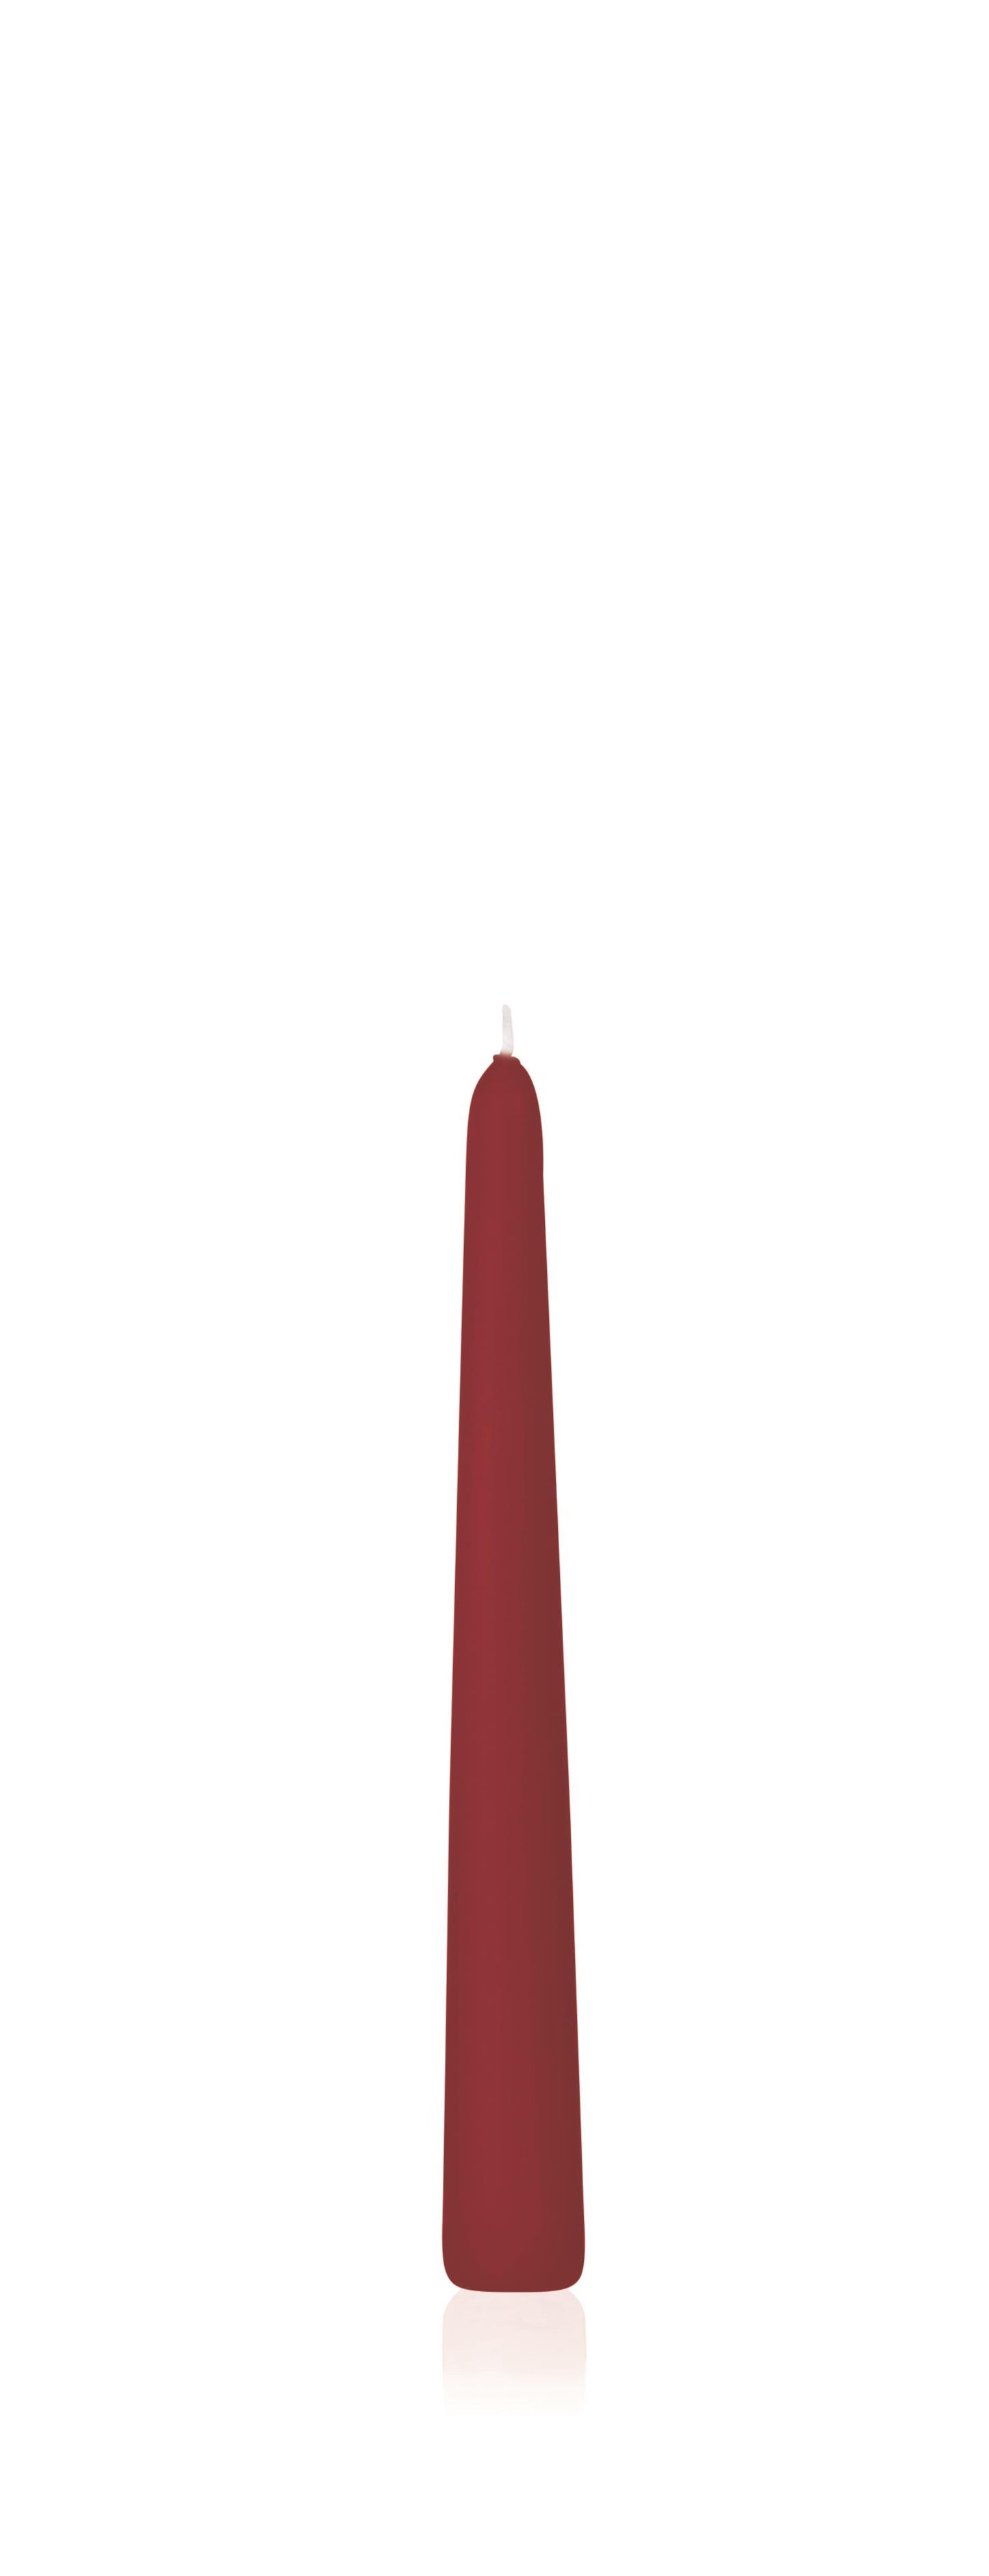 6x Konische Kerzen in Cellophan 200/20mm (Altrot)